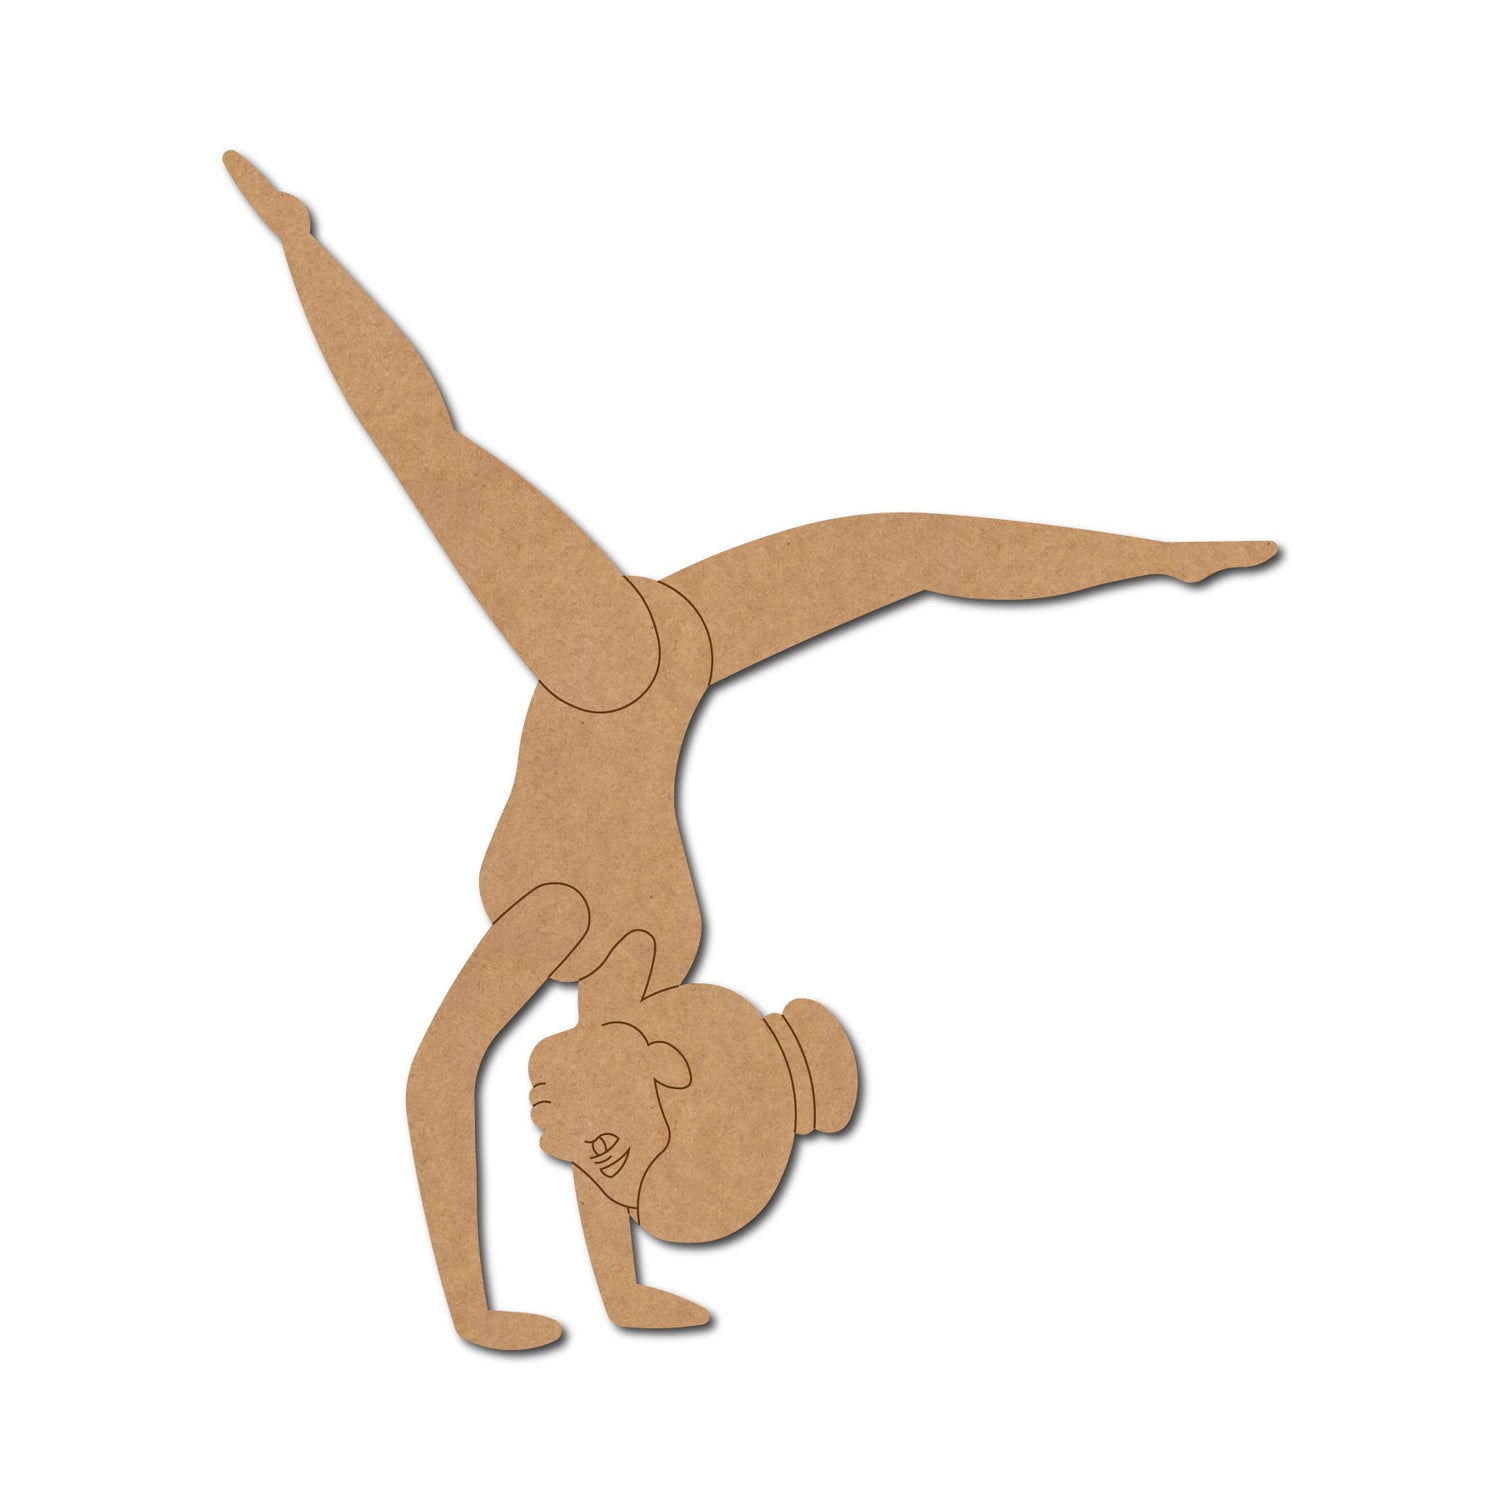 Gymnastics